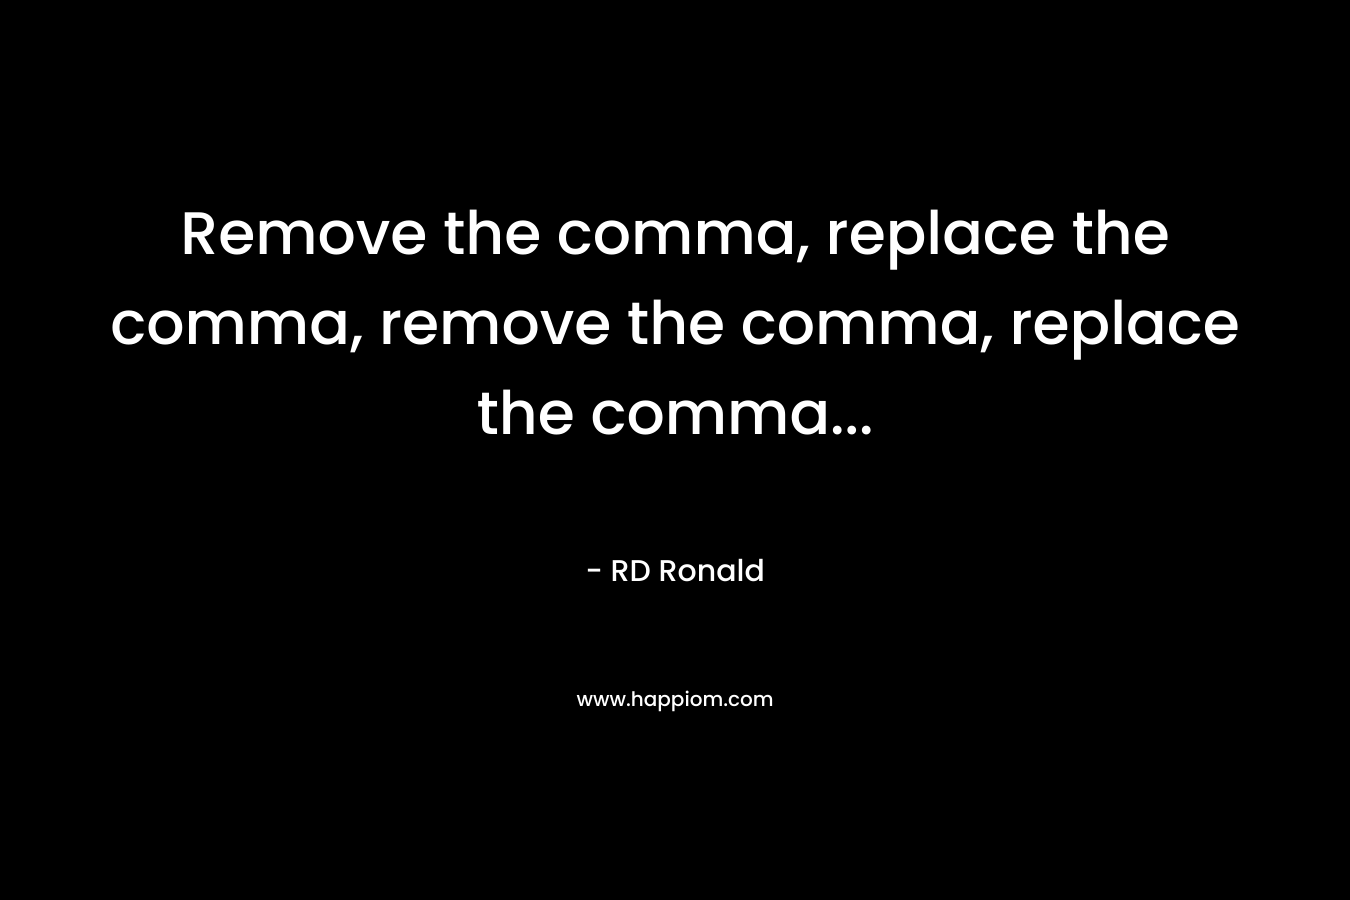 Remove the comma, replace the comma, remove the comma, replace the comma...